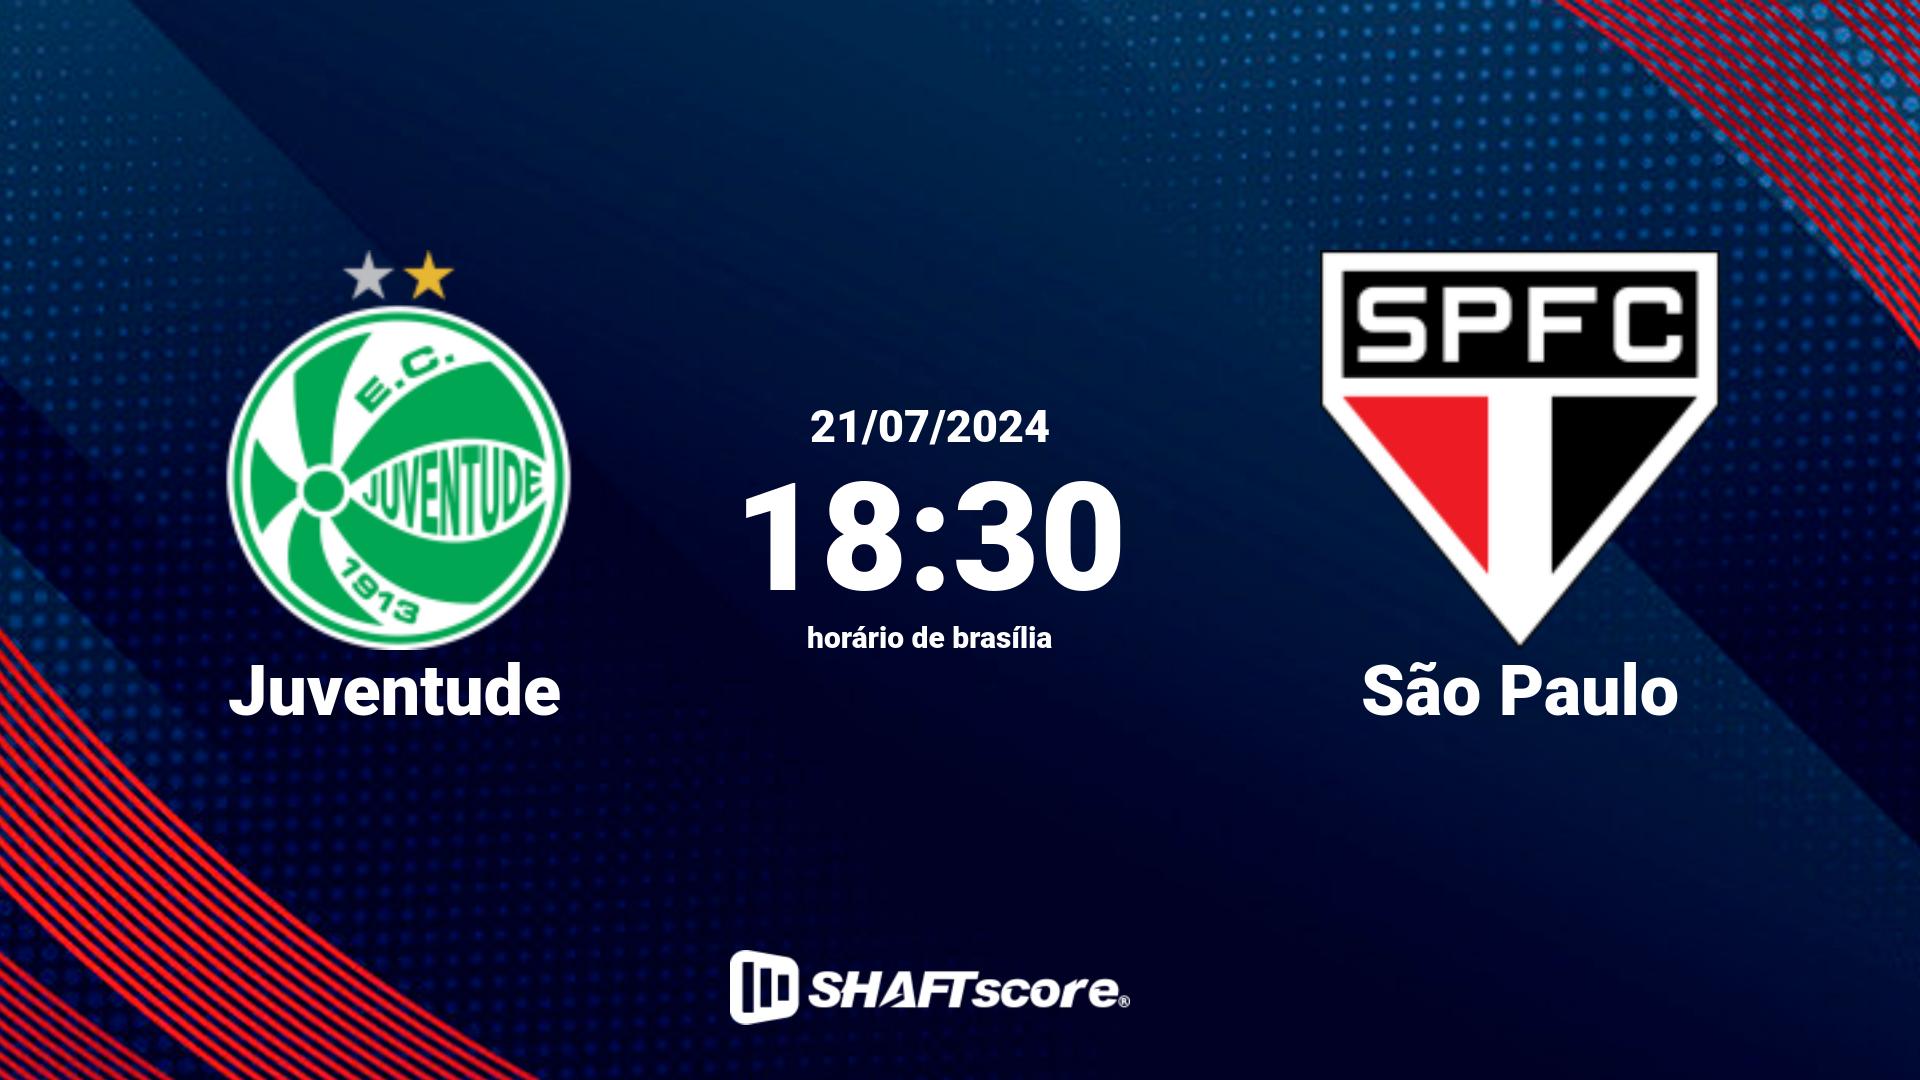 Estatísticas do jogo Juventude vs São Paulo 21.07 18:30